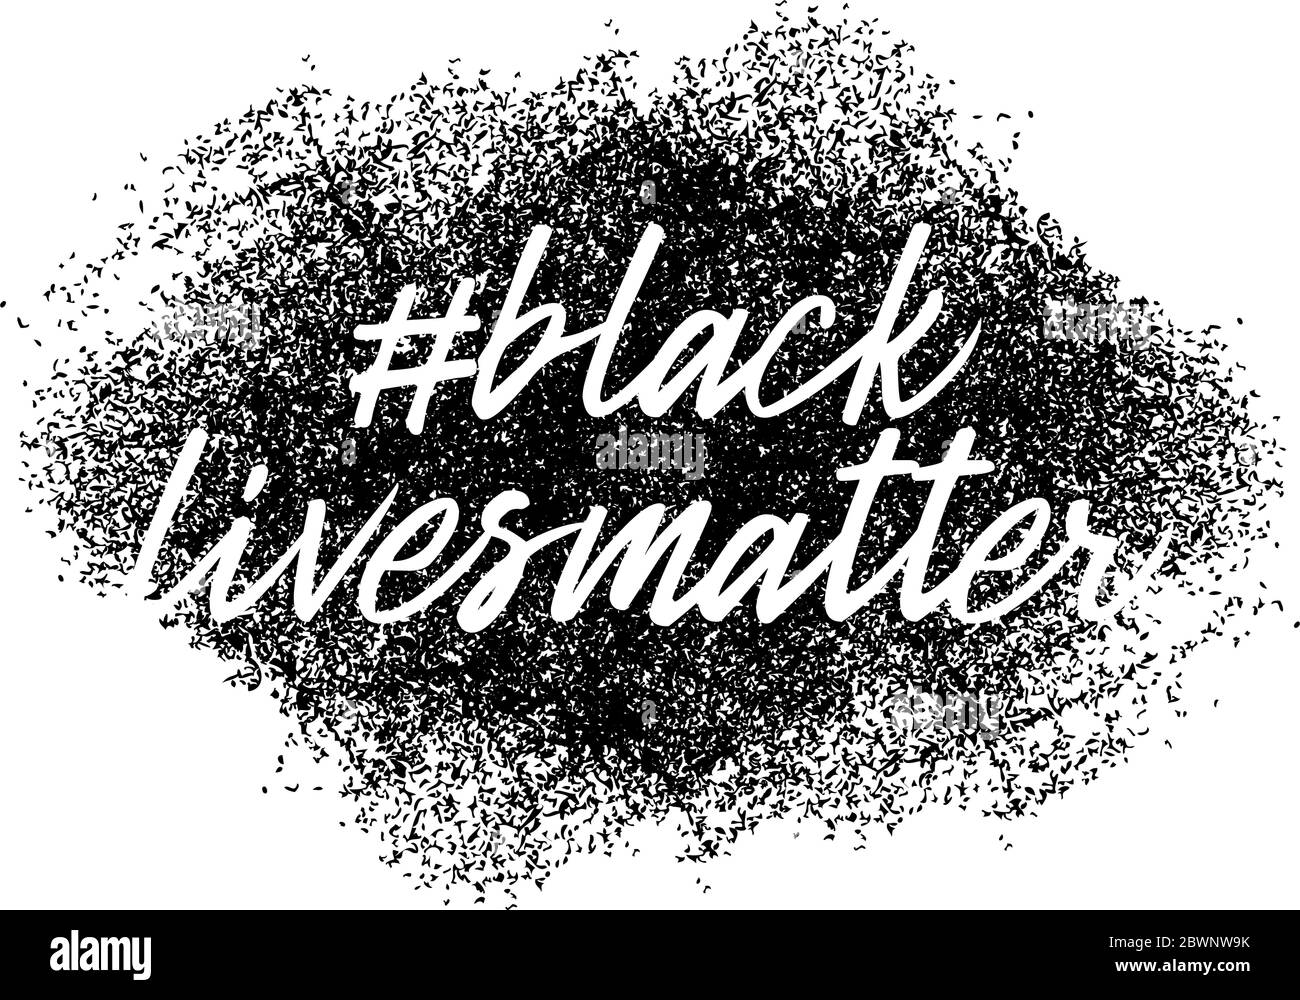 Las vidas negras importan. Banner de protesta sobre el derecho humano del pueblo negro en Estados Unidos. Ilustración vectorial. Ilustración del Vector